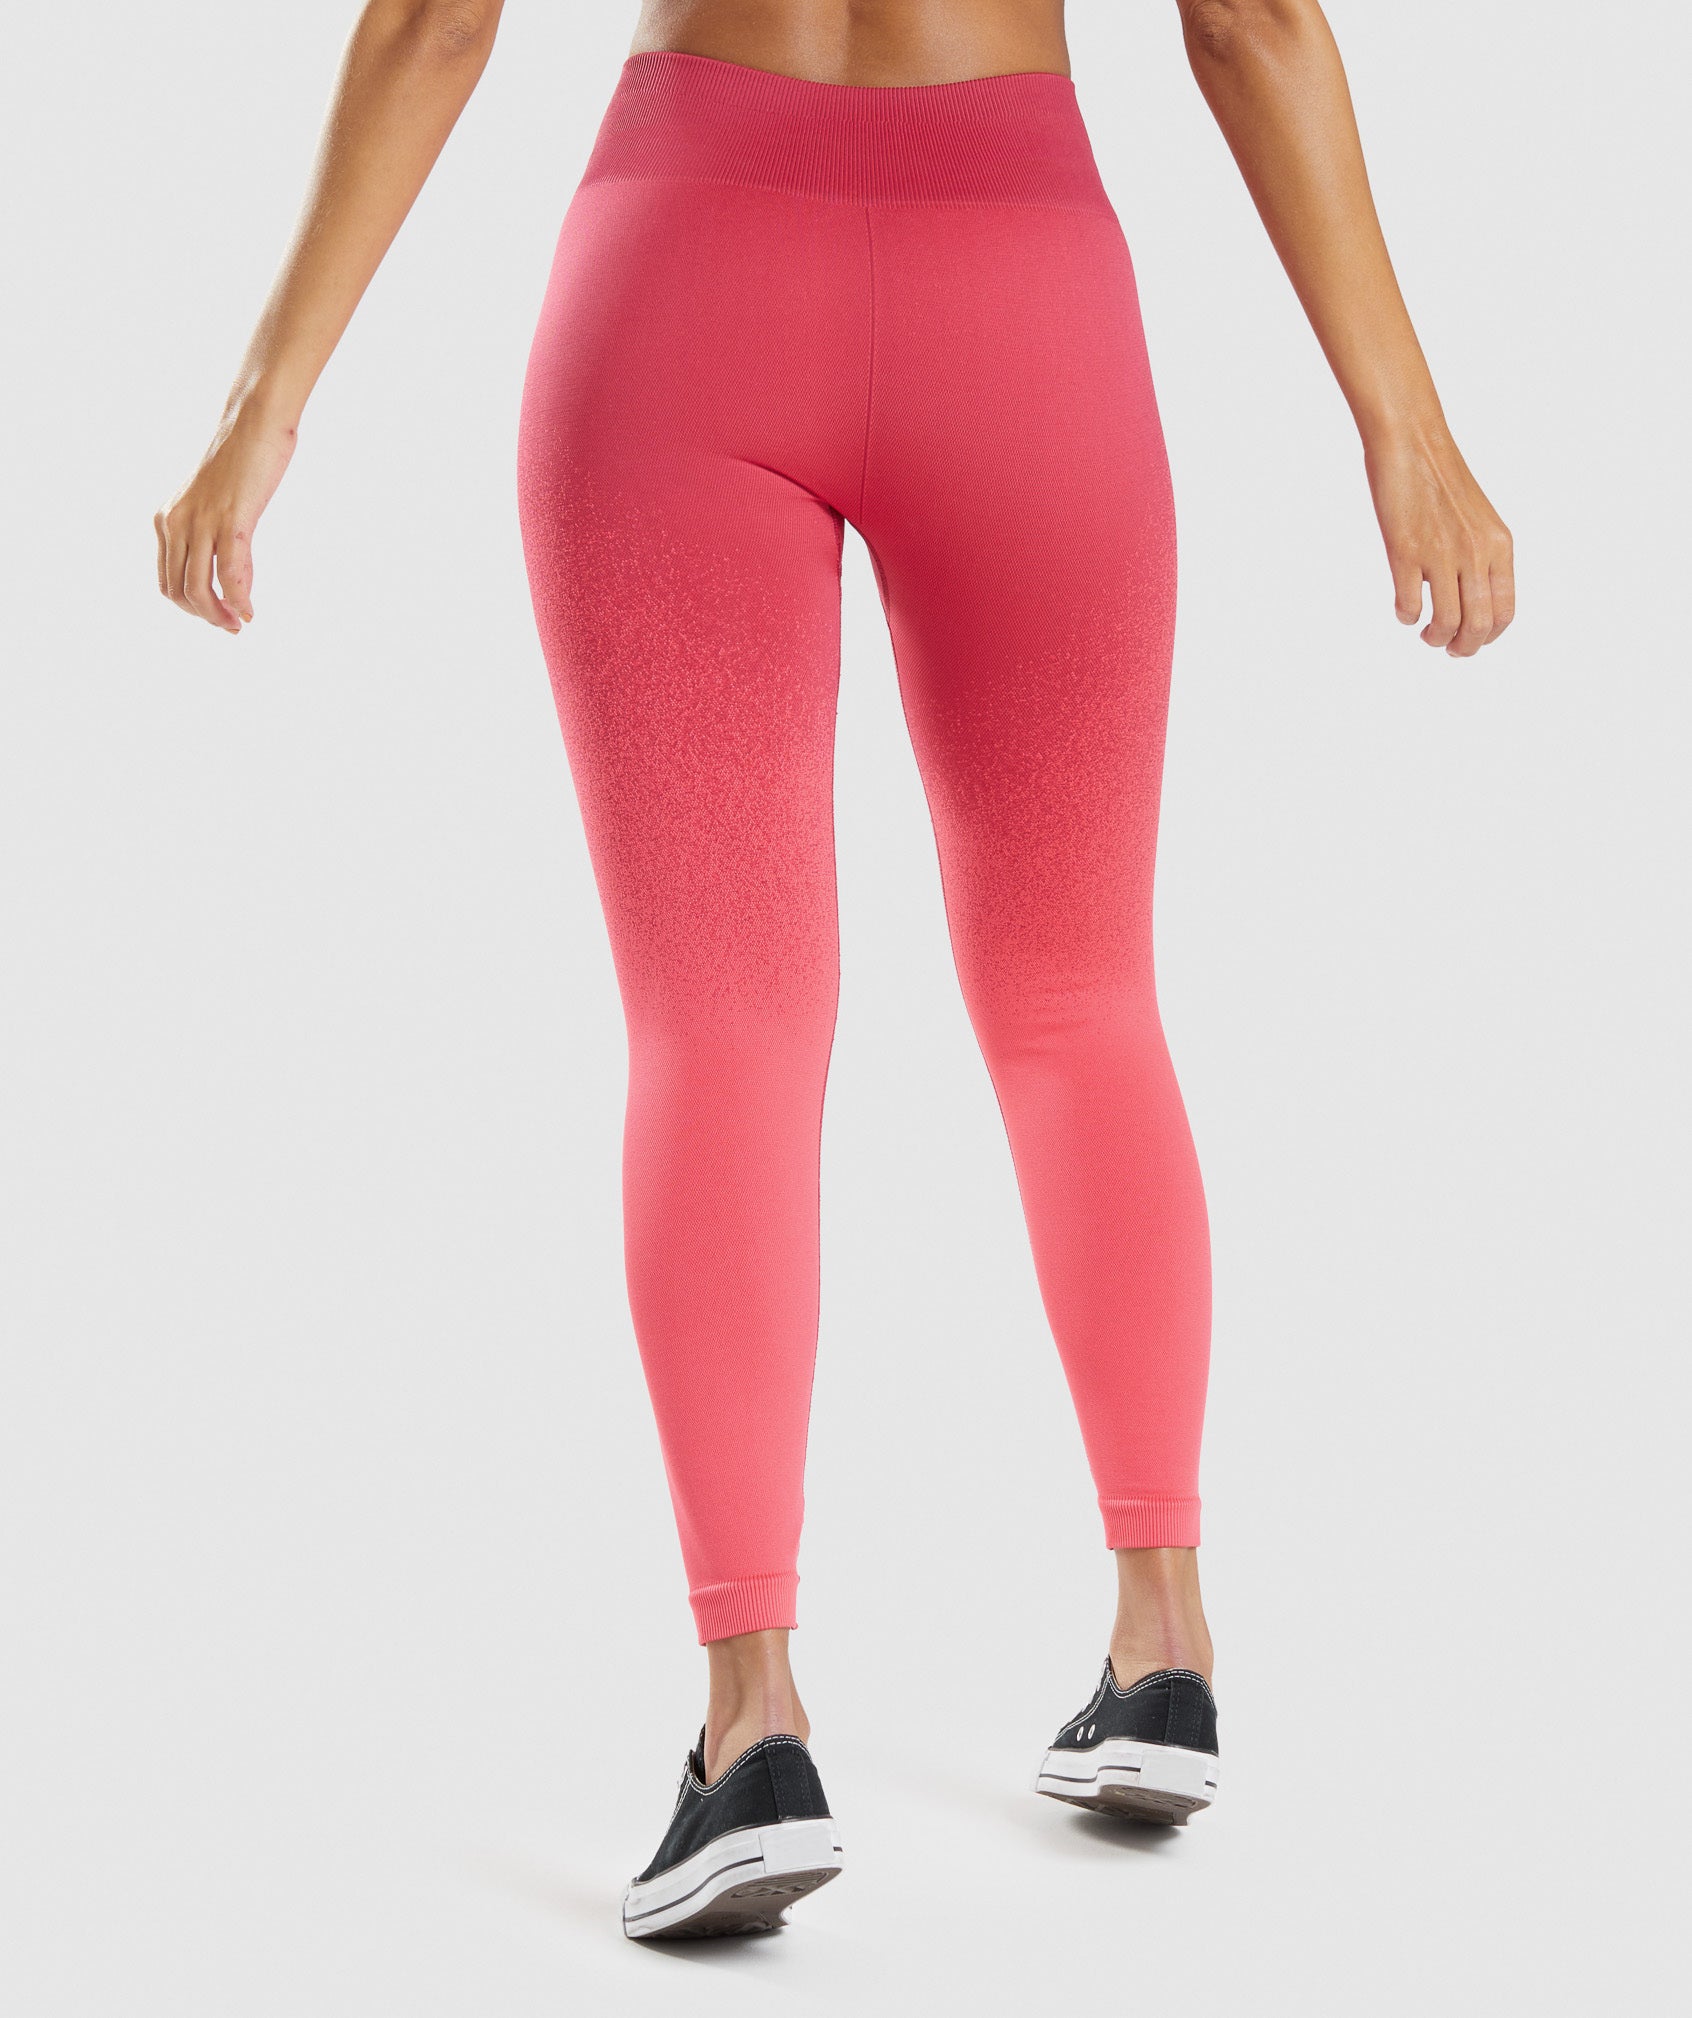 Gymshark Seamless Leggings Dusty Pale Pink Women's Size XS